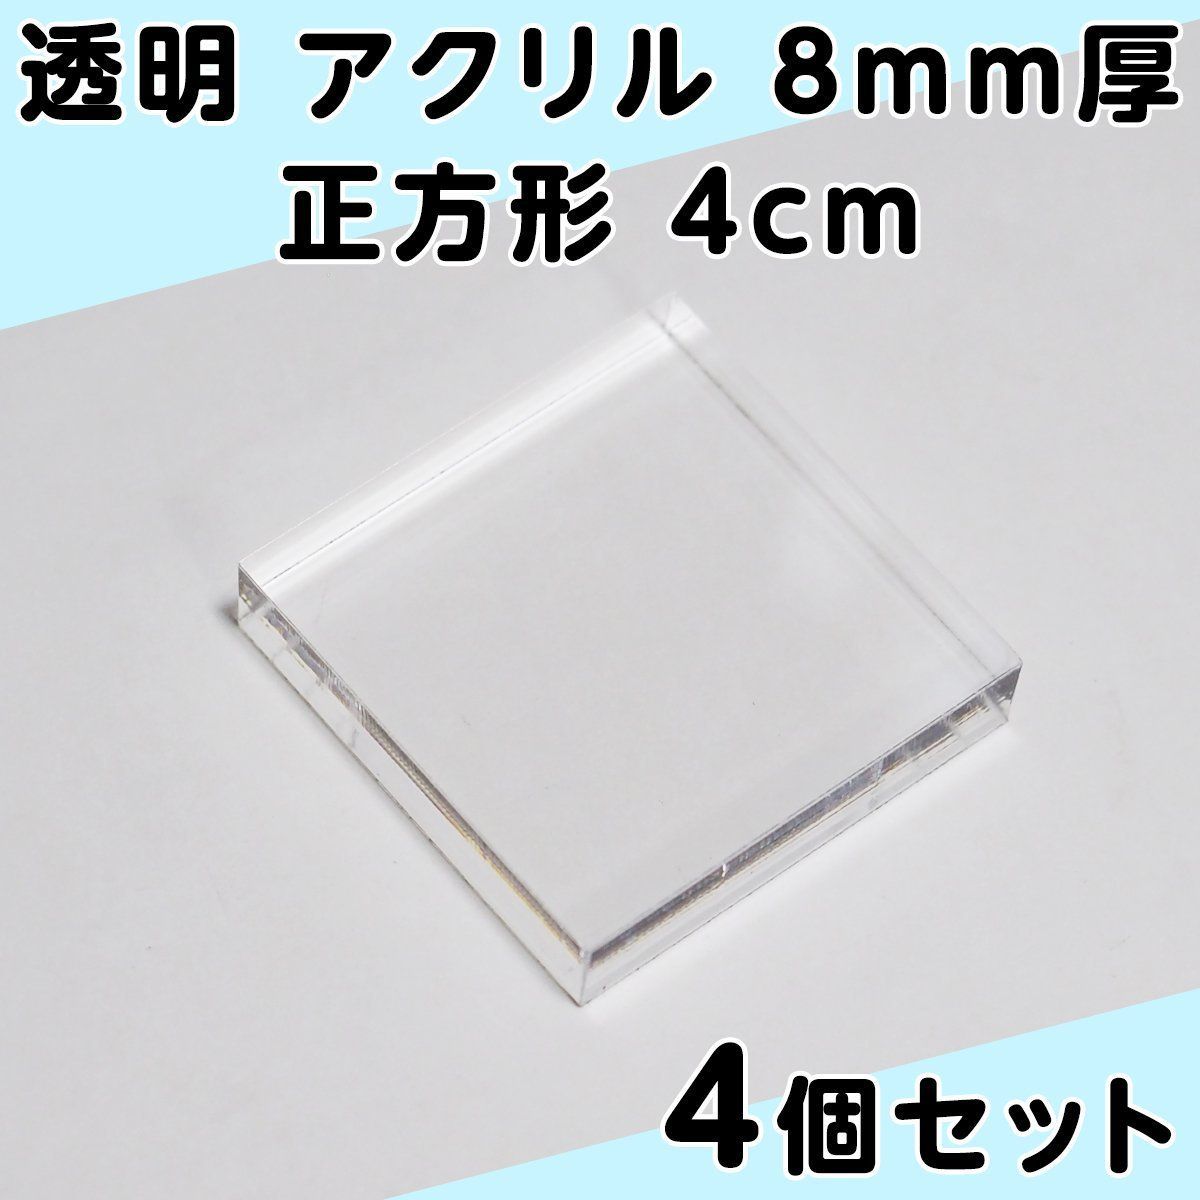 透明 アクリル 8mm厚 正方形 4cm 4個セット - メルカリ